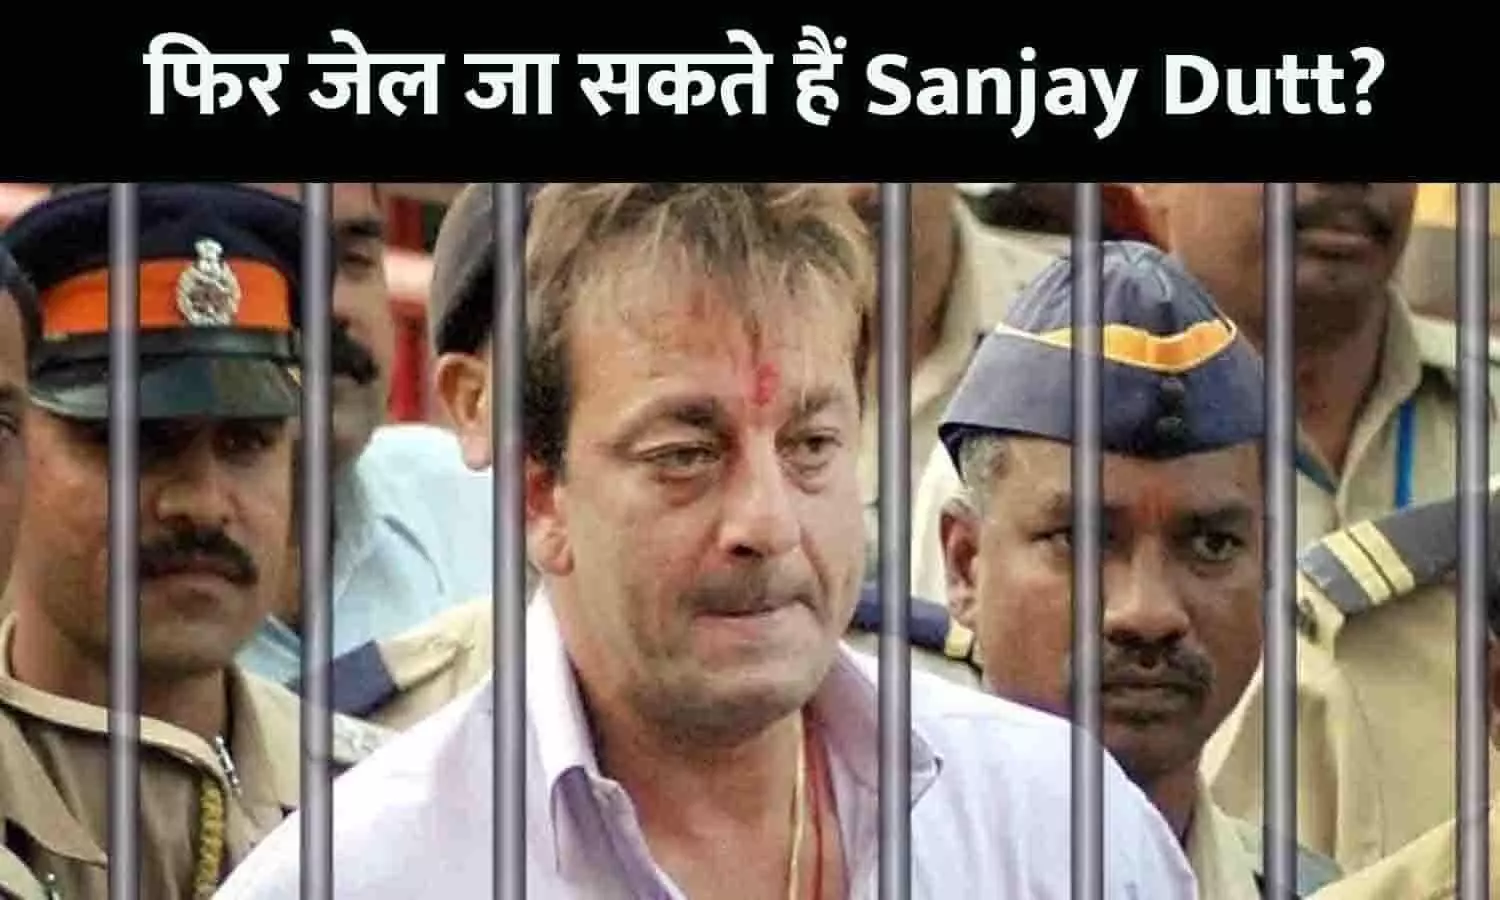 Sanjay Dutt can go to jail again